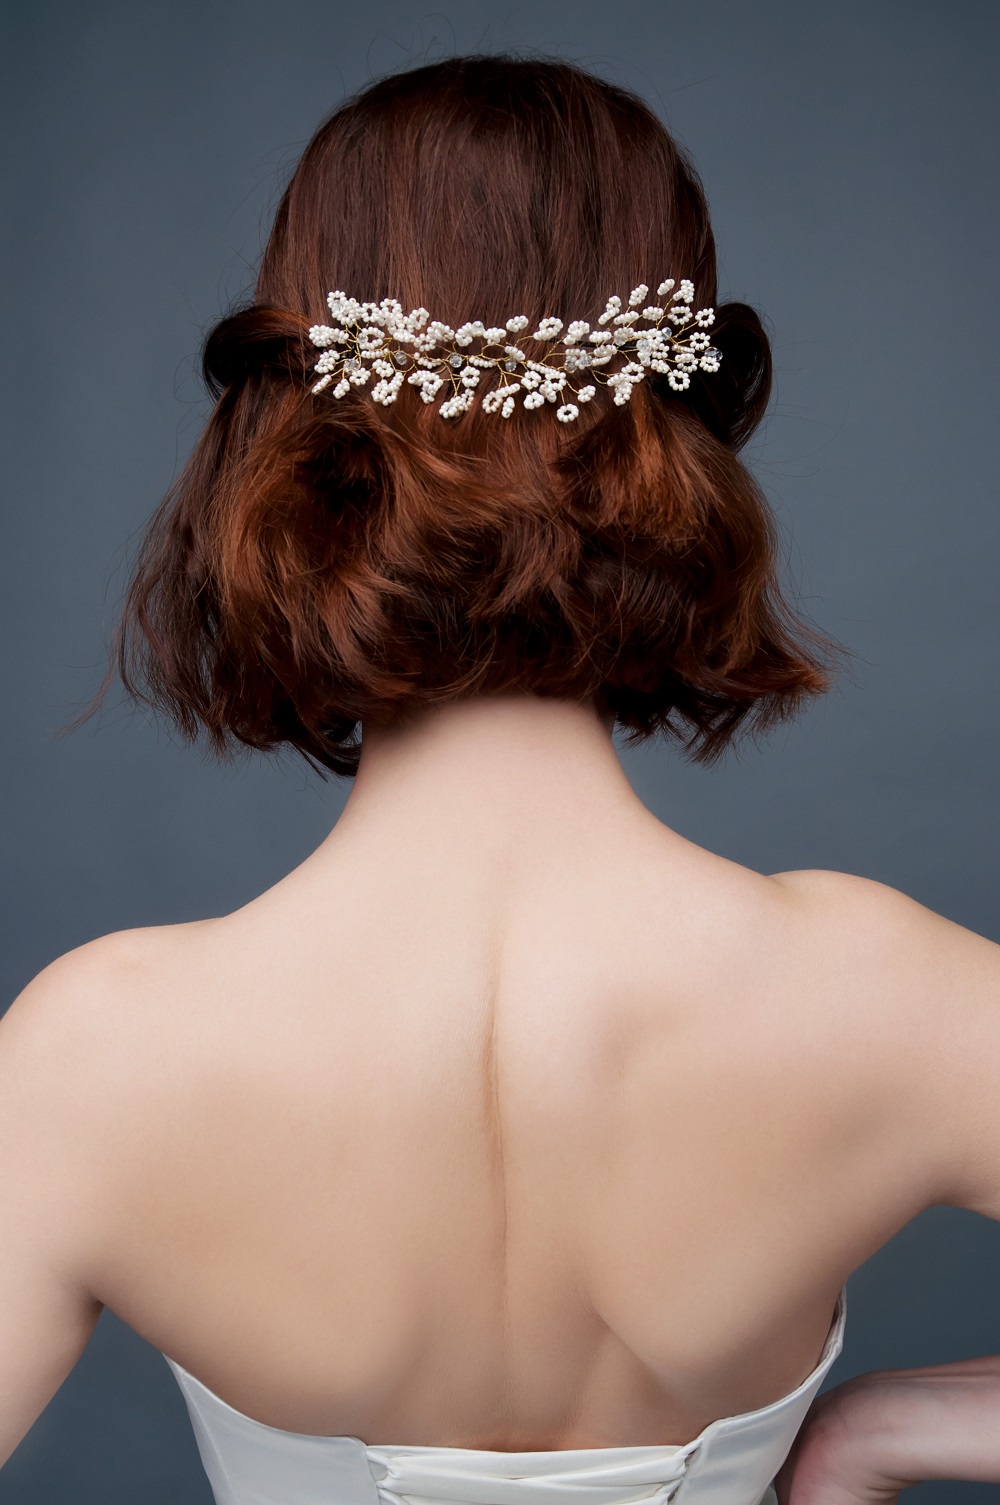 Subtelne upięcie na krótkich, rudych włosach jako przykład fryzury na wesele